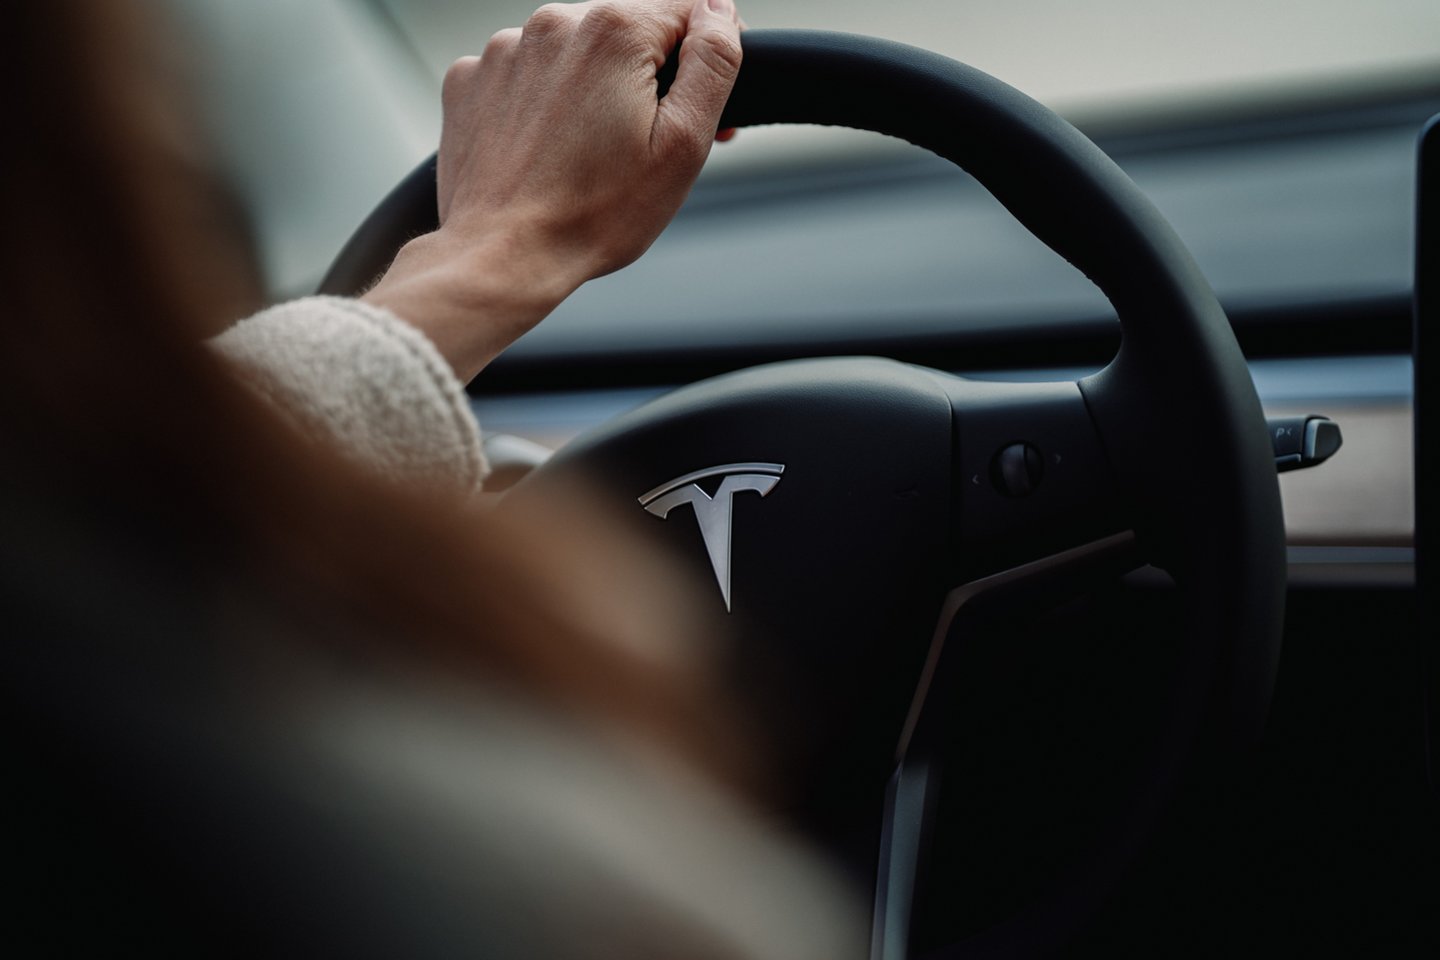 Elektromobilių gamintojos „Tesla“ vadovas Elonas Muskas ketvirtadienį investuotojams pranešė, kad įmonė perkelia savo būstinę iš Silicio slėnio į Teksasą.<br>www.unsplash.com nuotr.